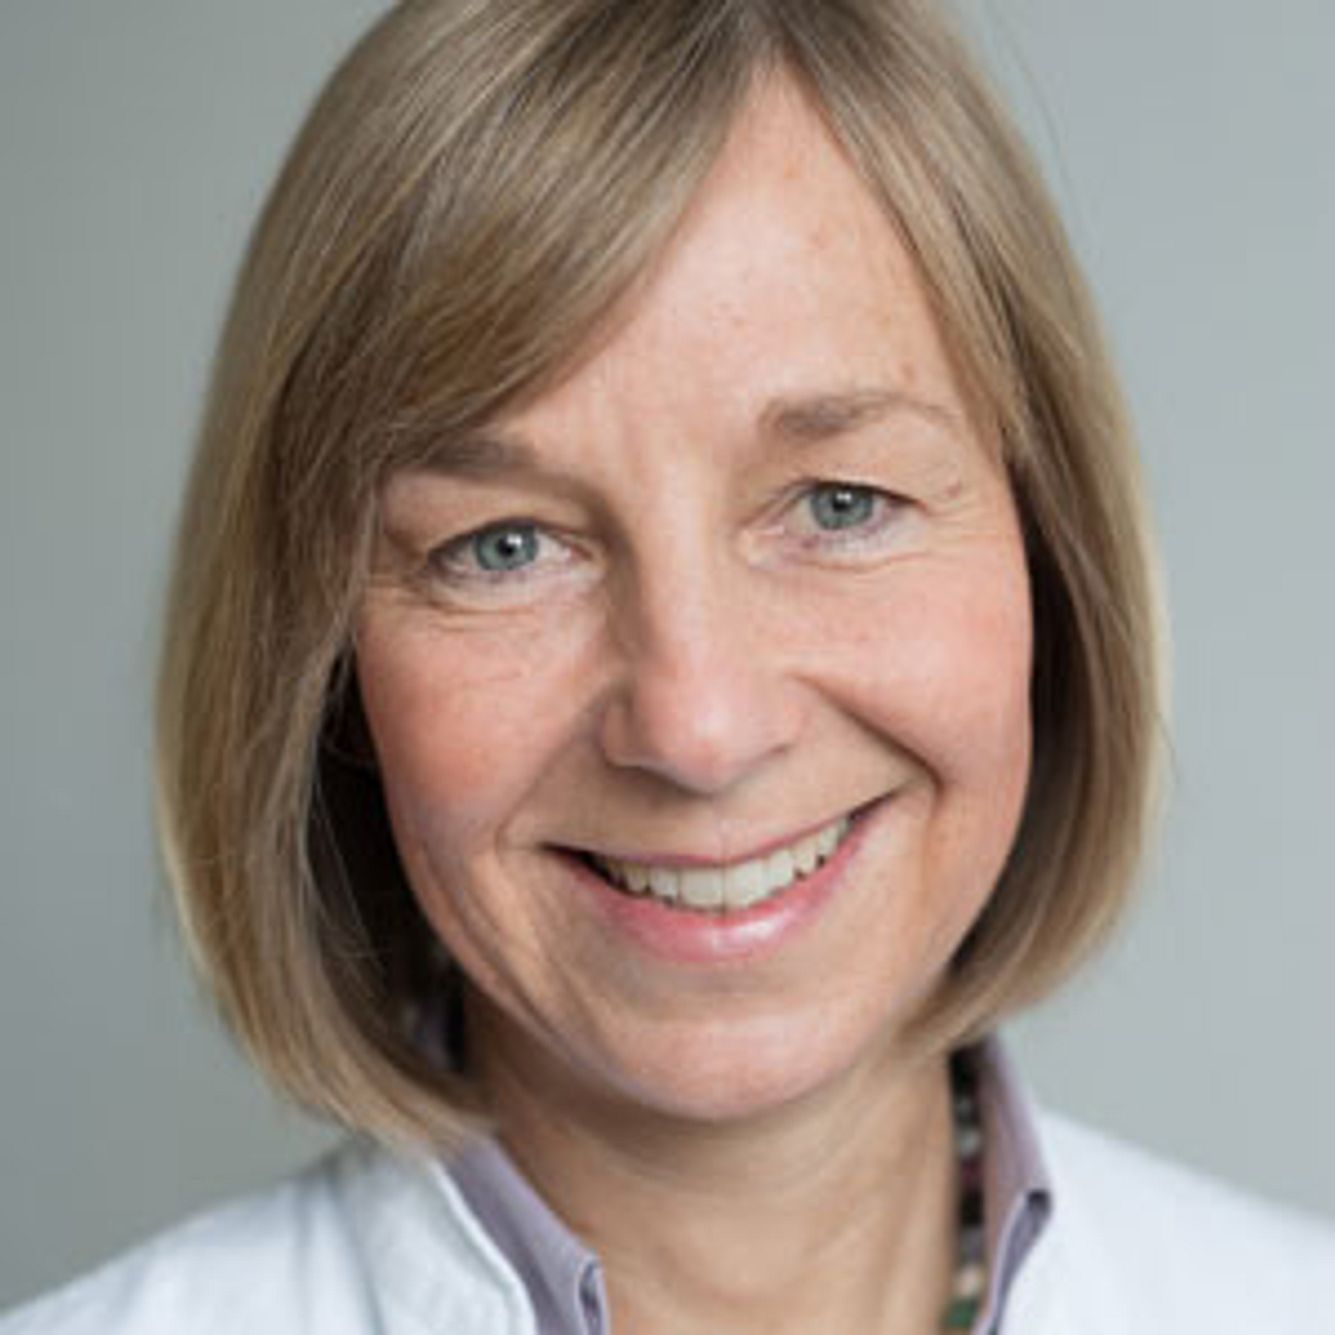 Ärztin Dr. Ingrid Schmoeckel, Dermatologin, Hamburg, im Interview zu Neurodermitis